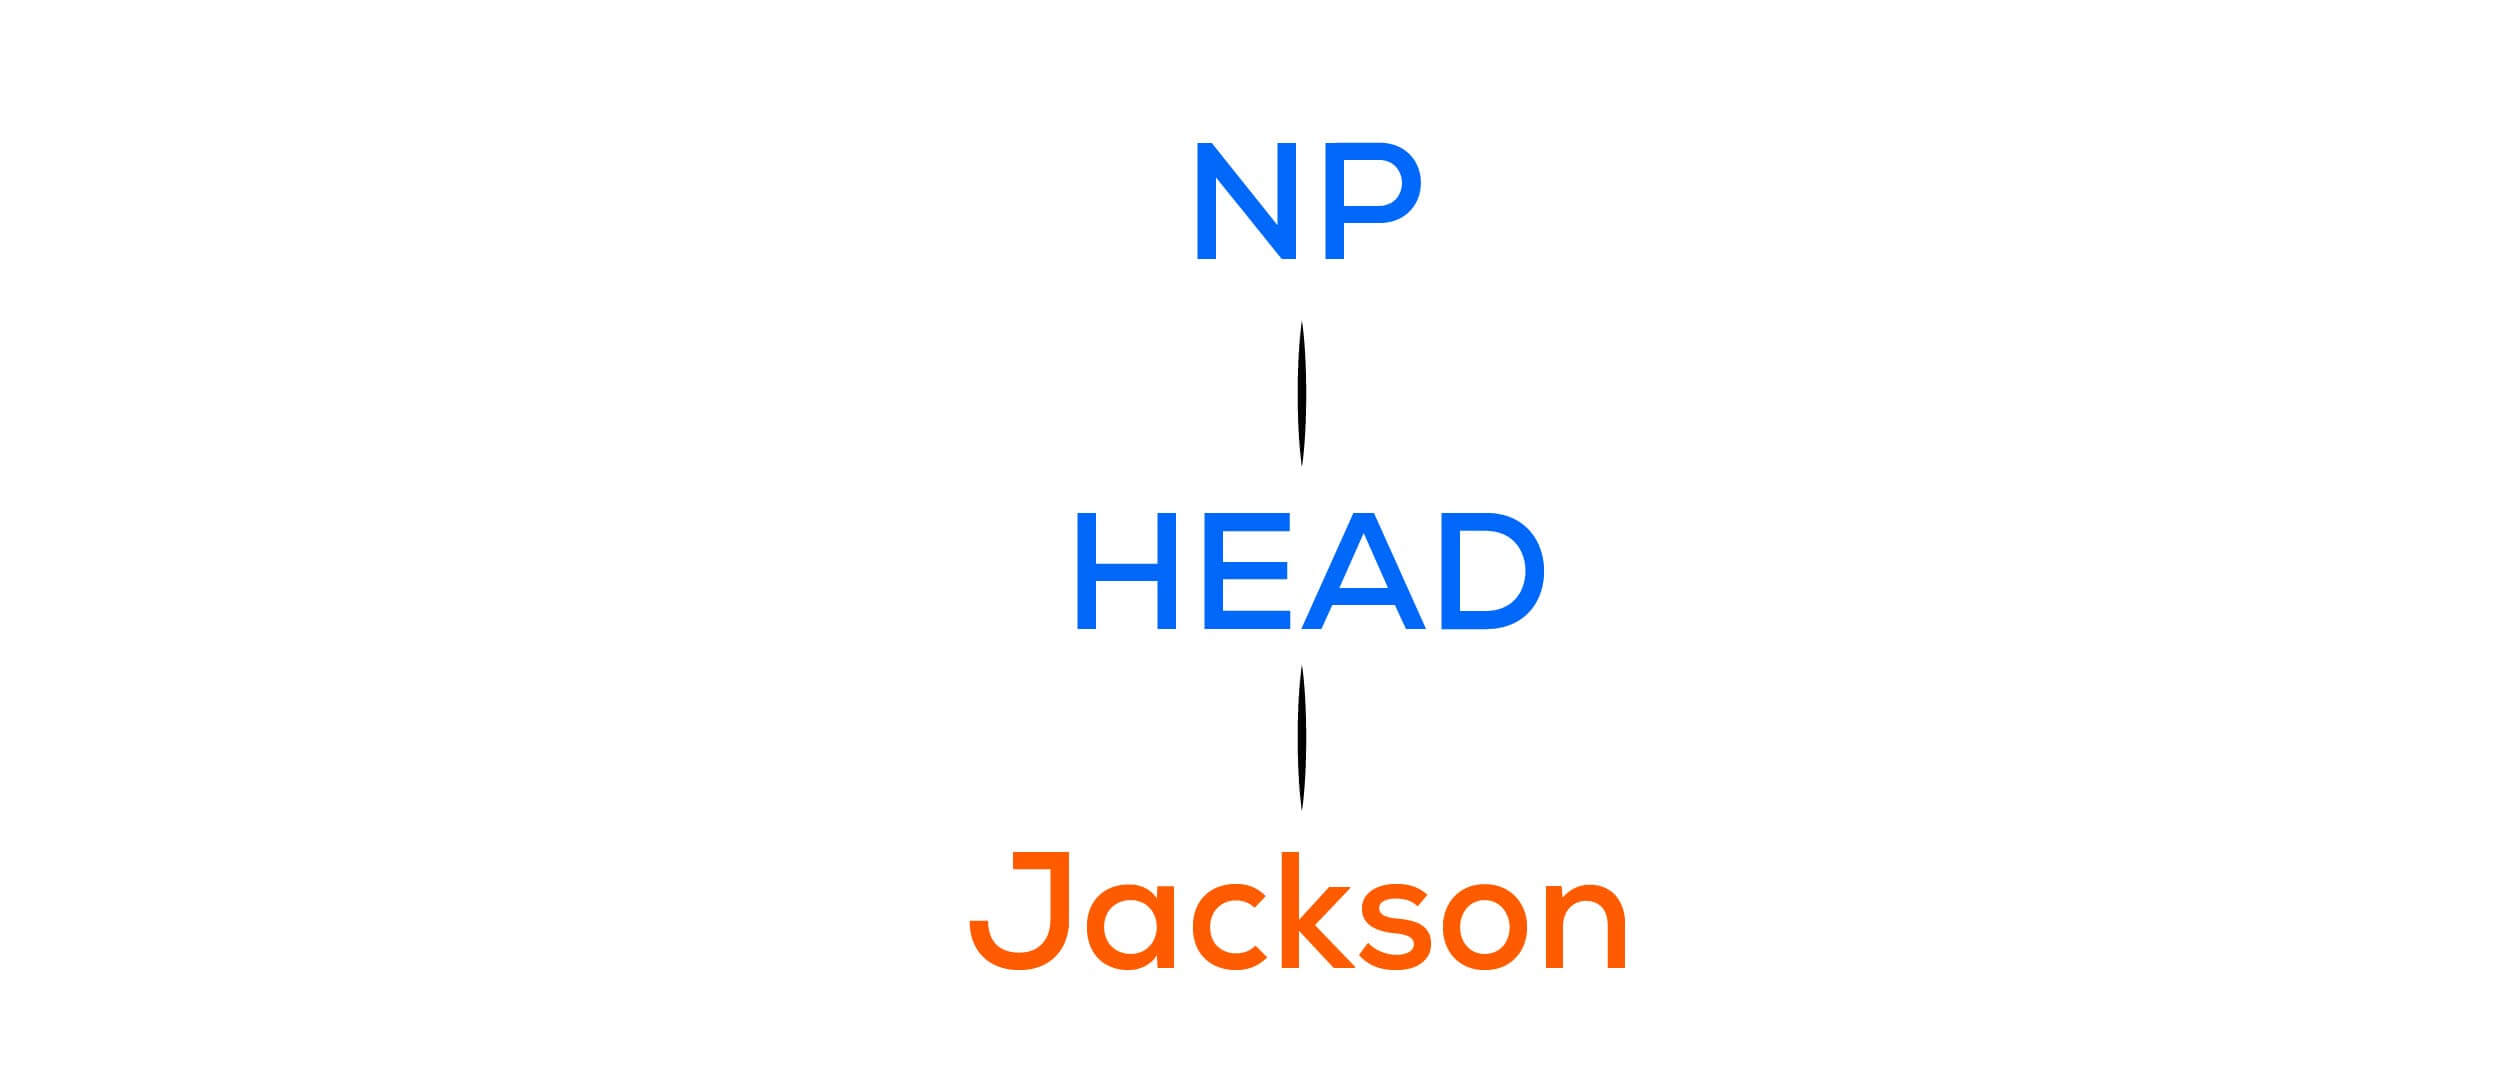 noun-phrase-jackson